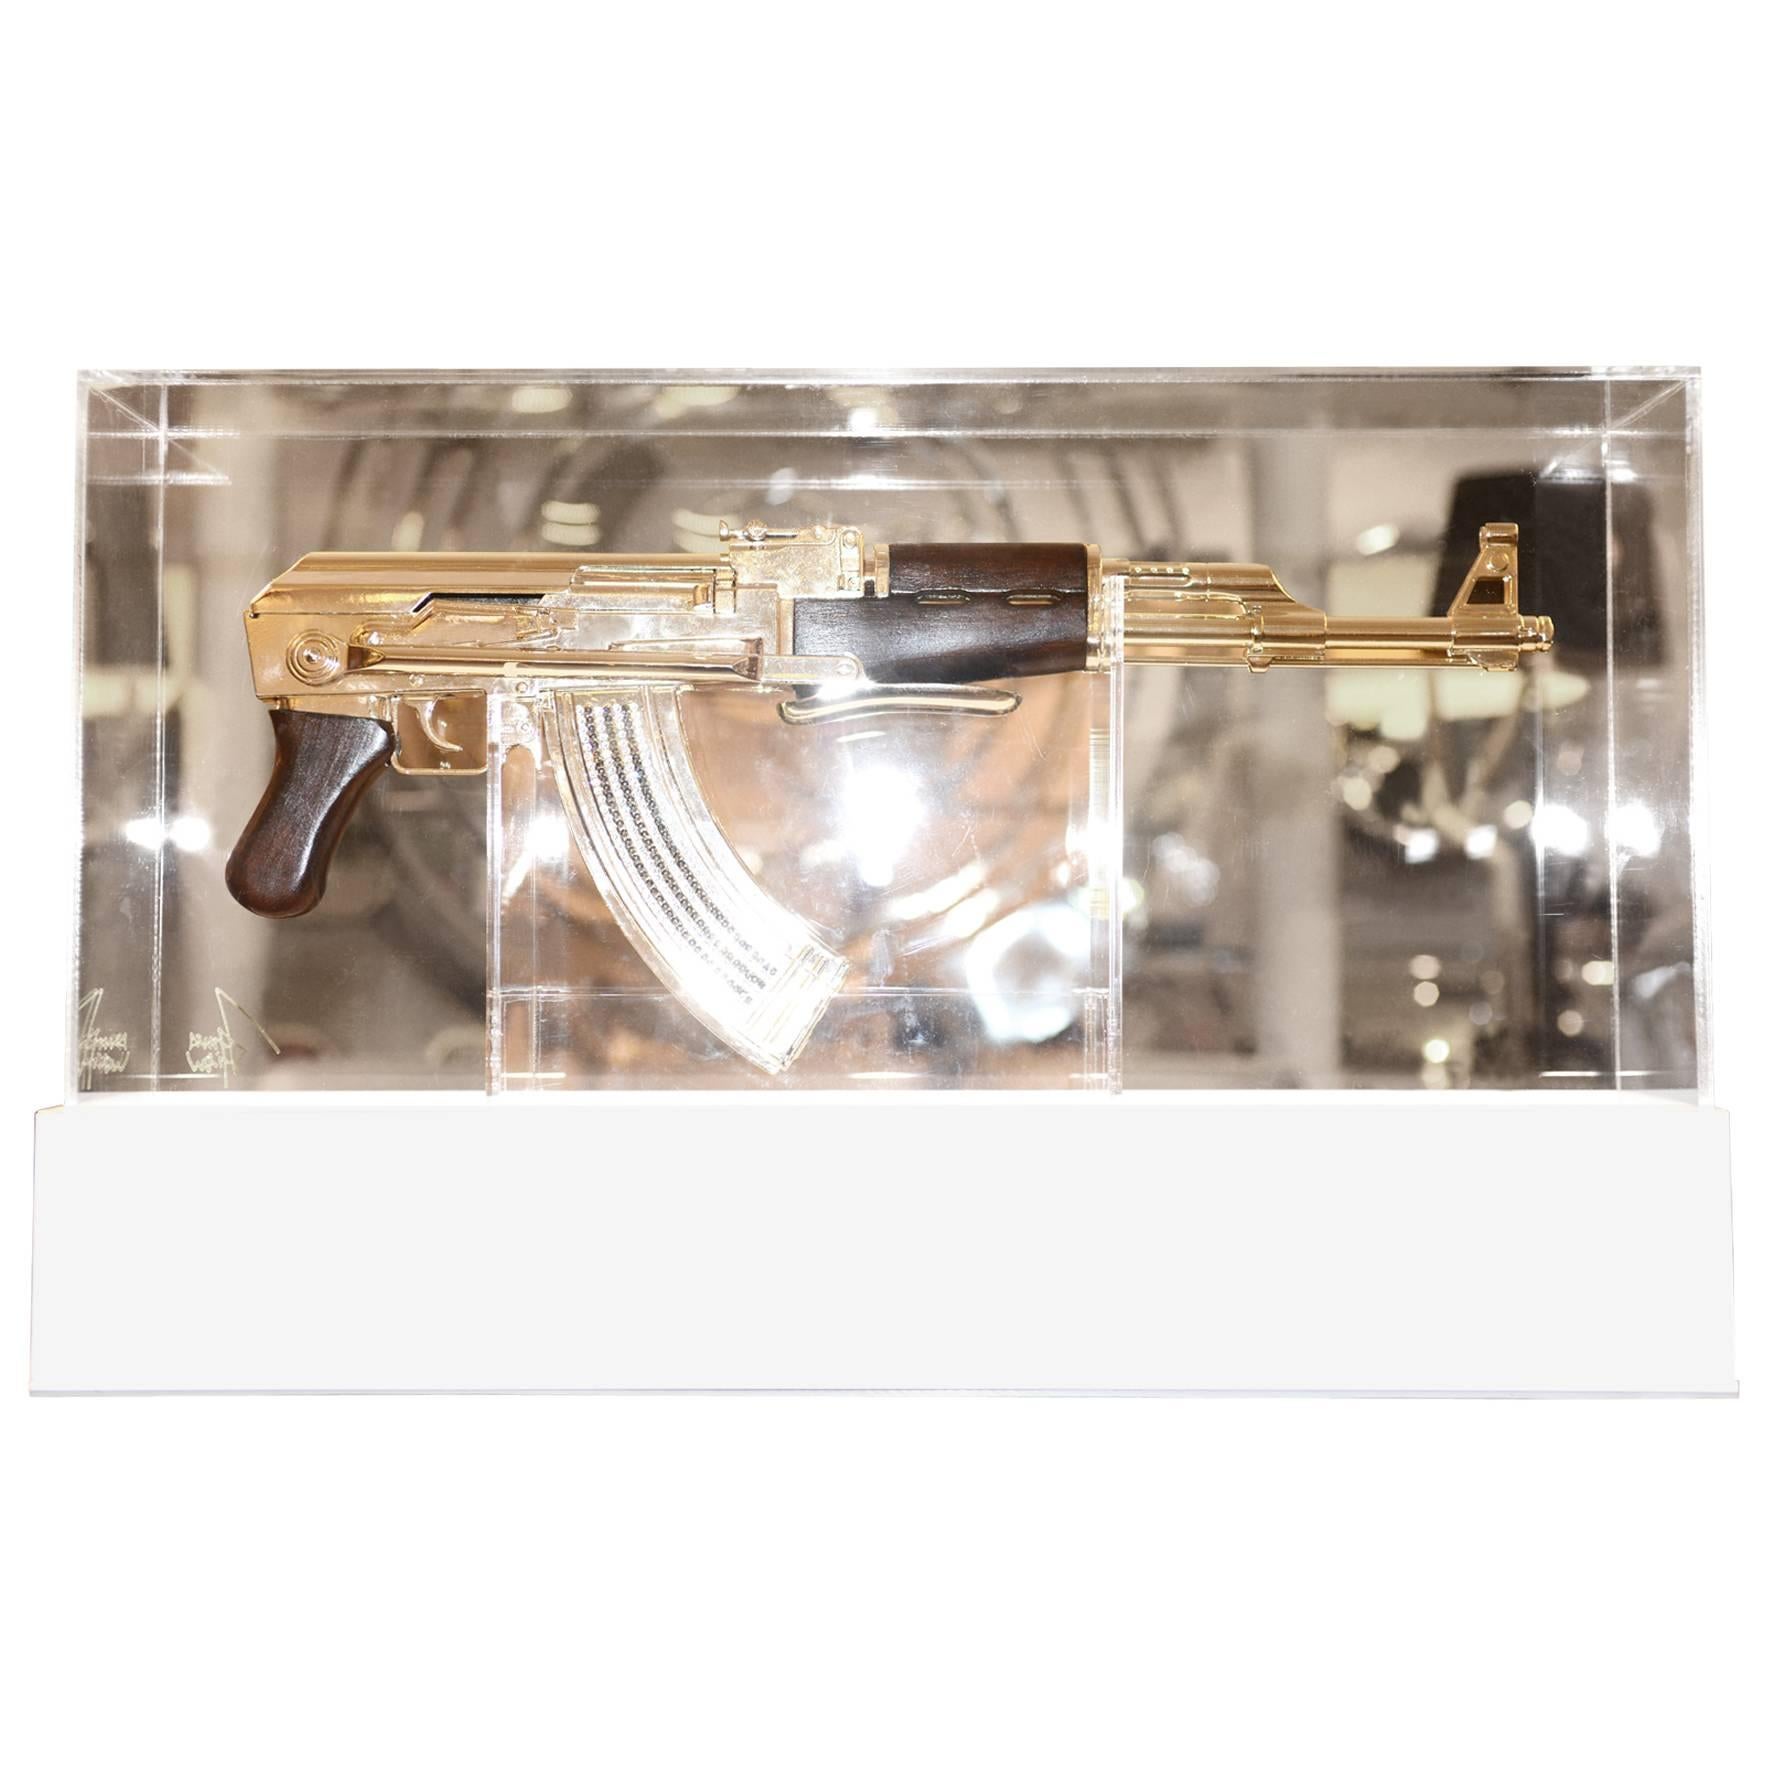 Sturmgewehr AK-47:: in silberner Ausführung. Nicht-funktional. 
Authentisches Stück in limitierter Auflage::
Nummeriert 04/05. Finish mit Silber. 
Basis auf Plexiglas mit LED-Licht
und System der Farbvariation und Intensität. 
Eingetragen.